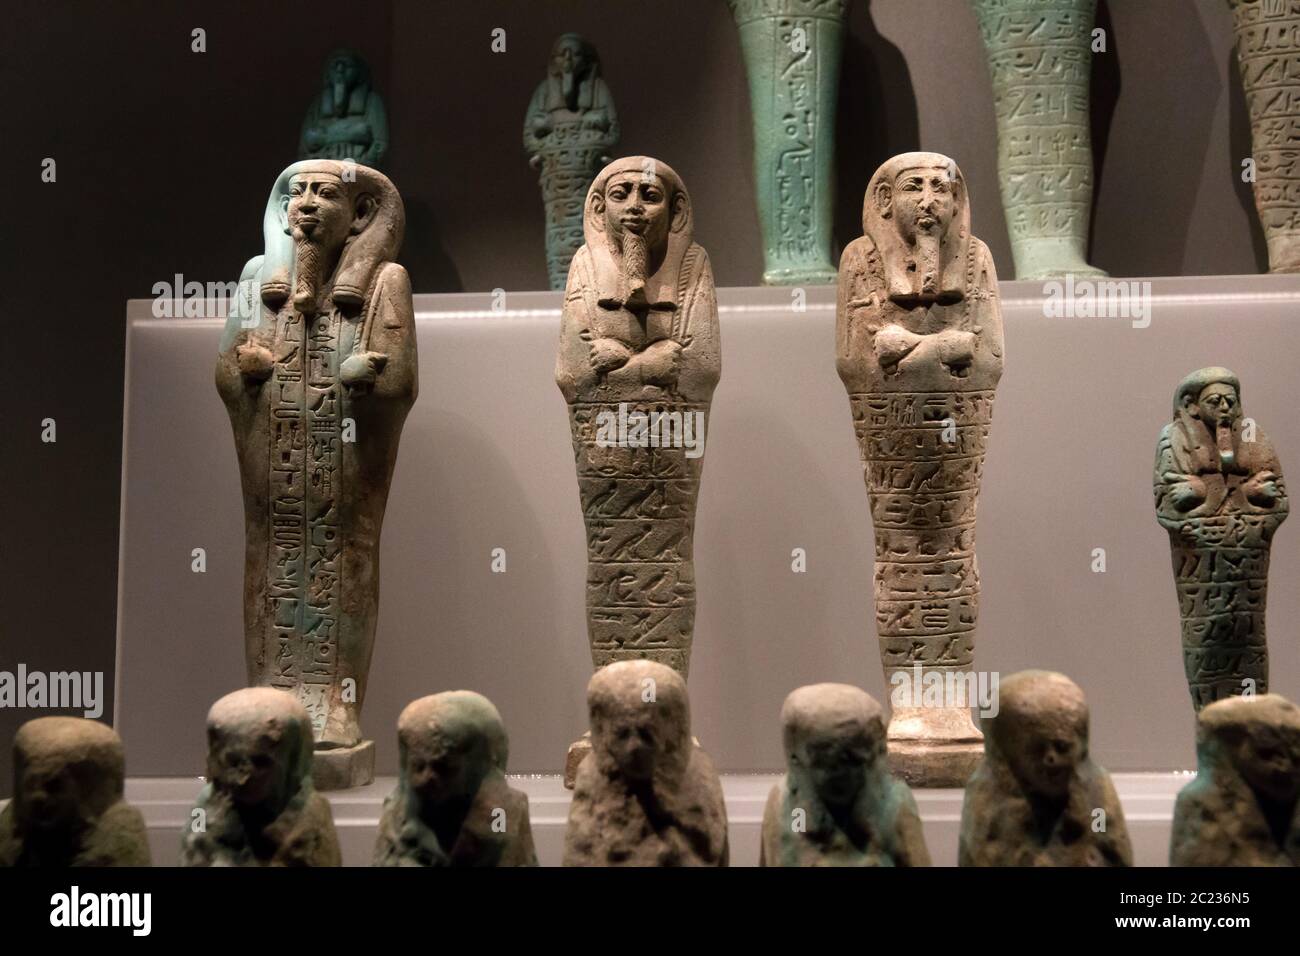 Leiden, Paesi Bassi 26 GENNAIO 2019: Piccole statuette di pietra antica shabti mummiformi alla mostra degli dei d'Egitto a Leida. Figurine funerarie. Foto Stock